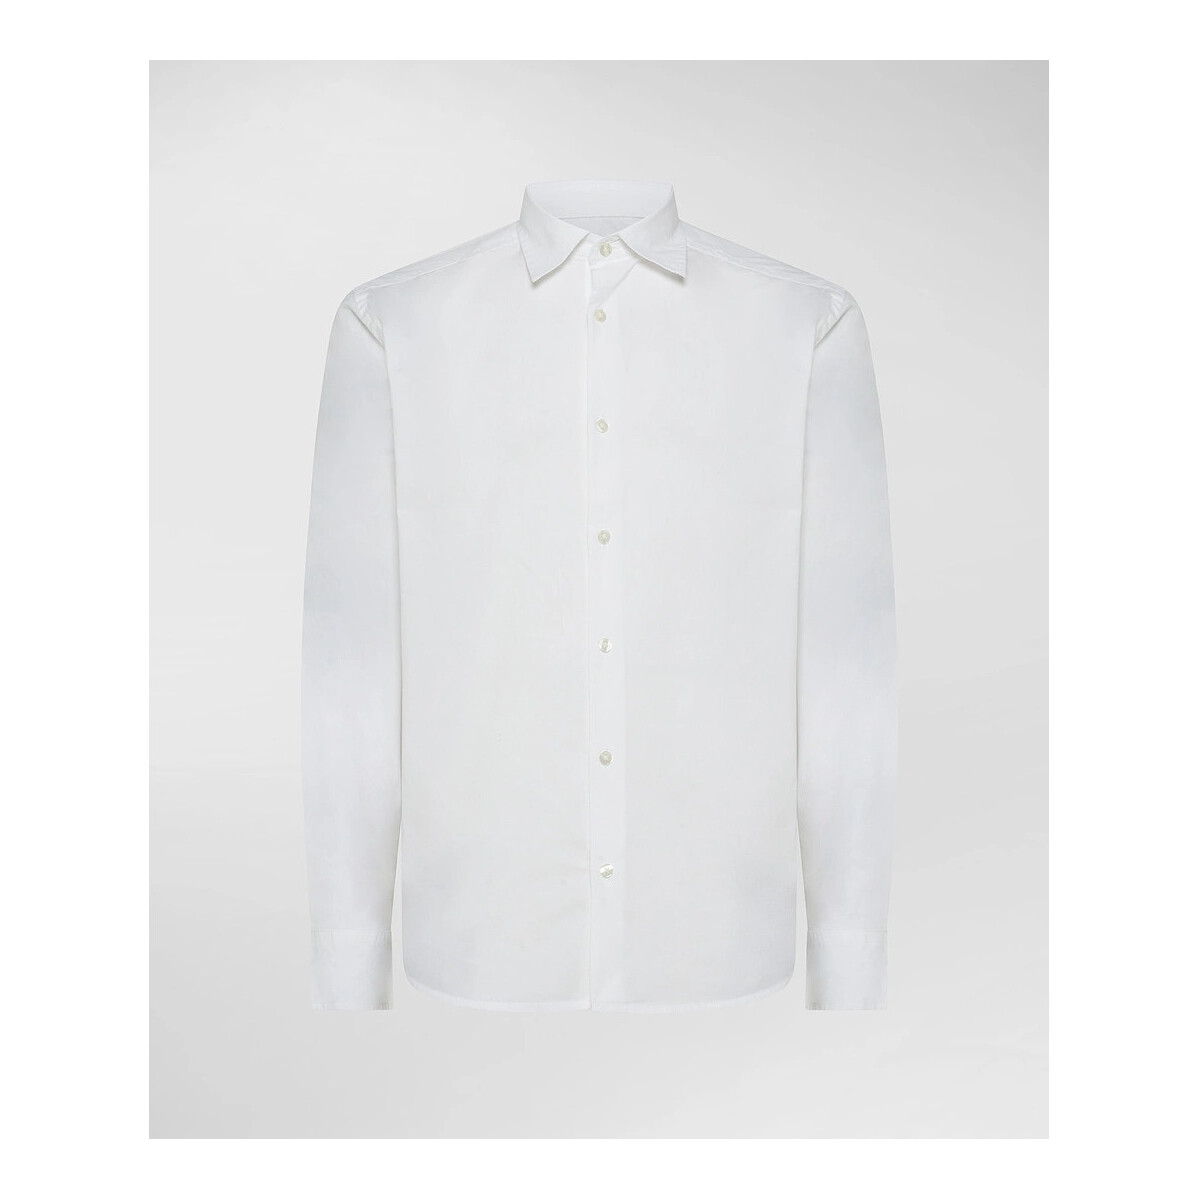 textil Hombre Camisas manga larga Peuterey PEU4679 Blanco